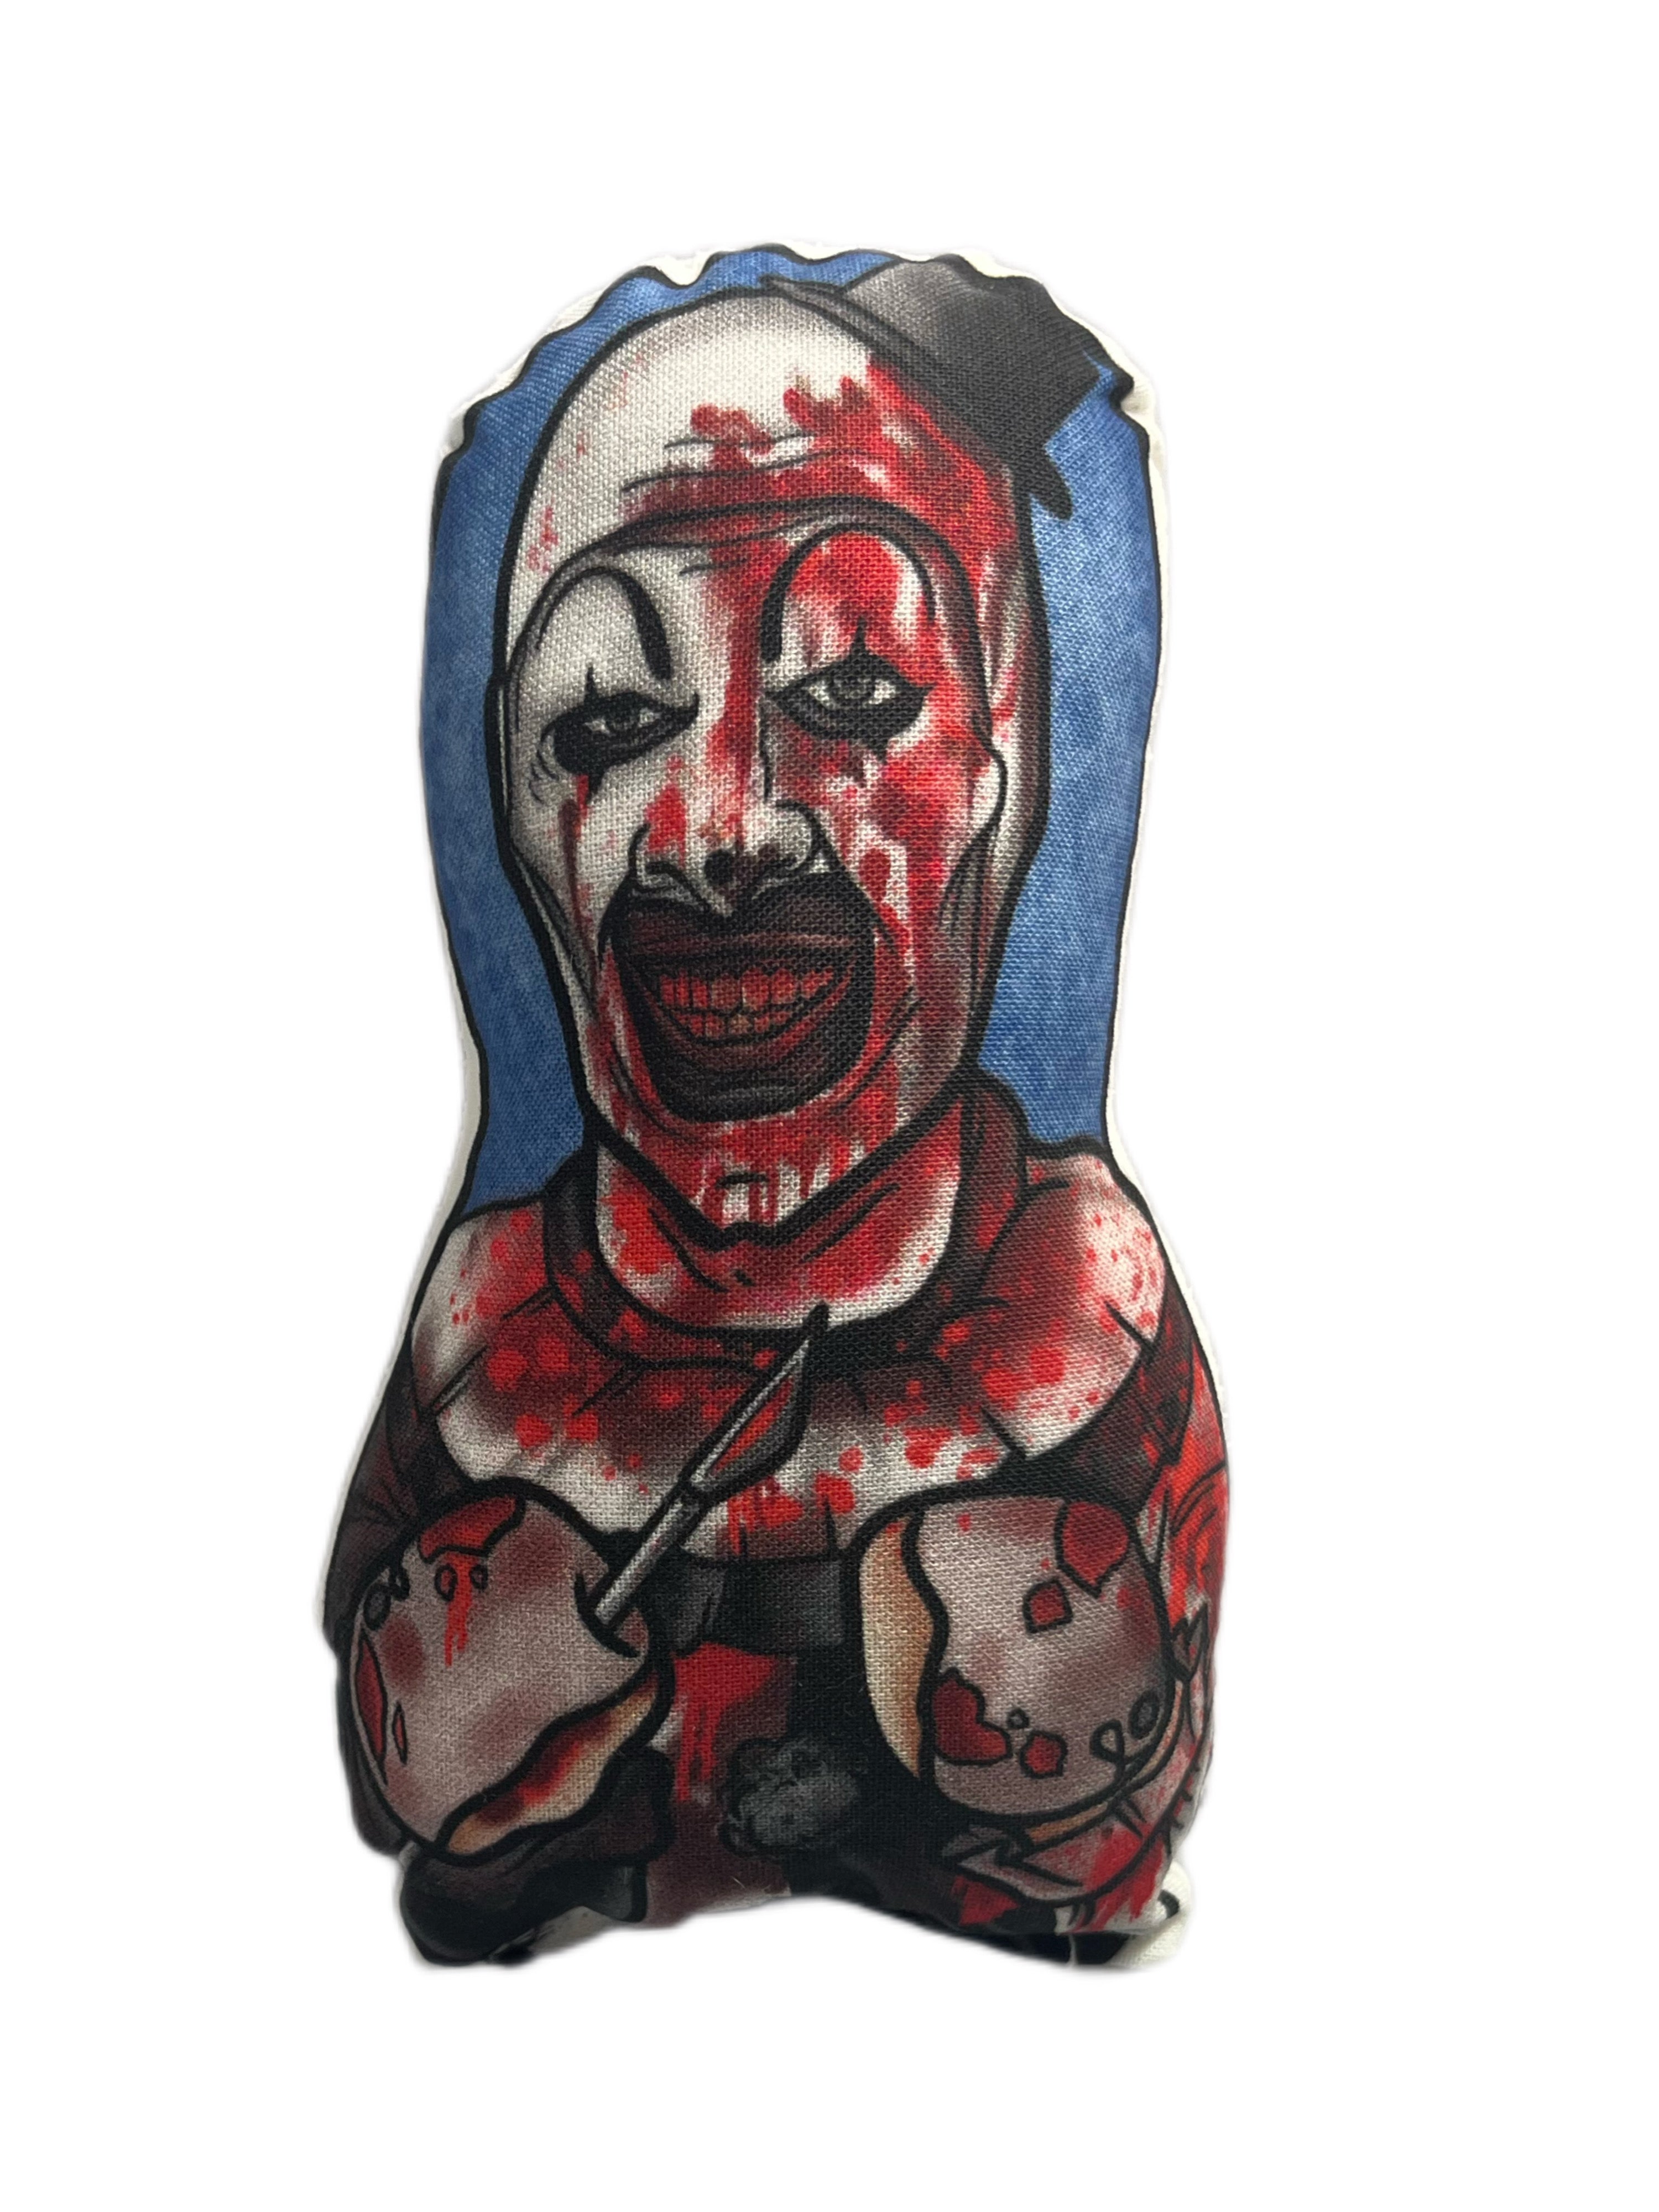 Terrifier Art The Clown Inspired 5" Plush Doll